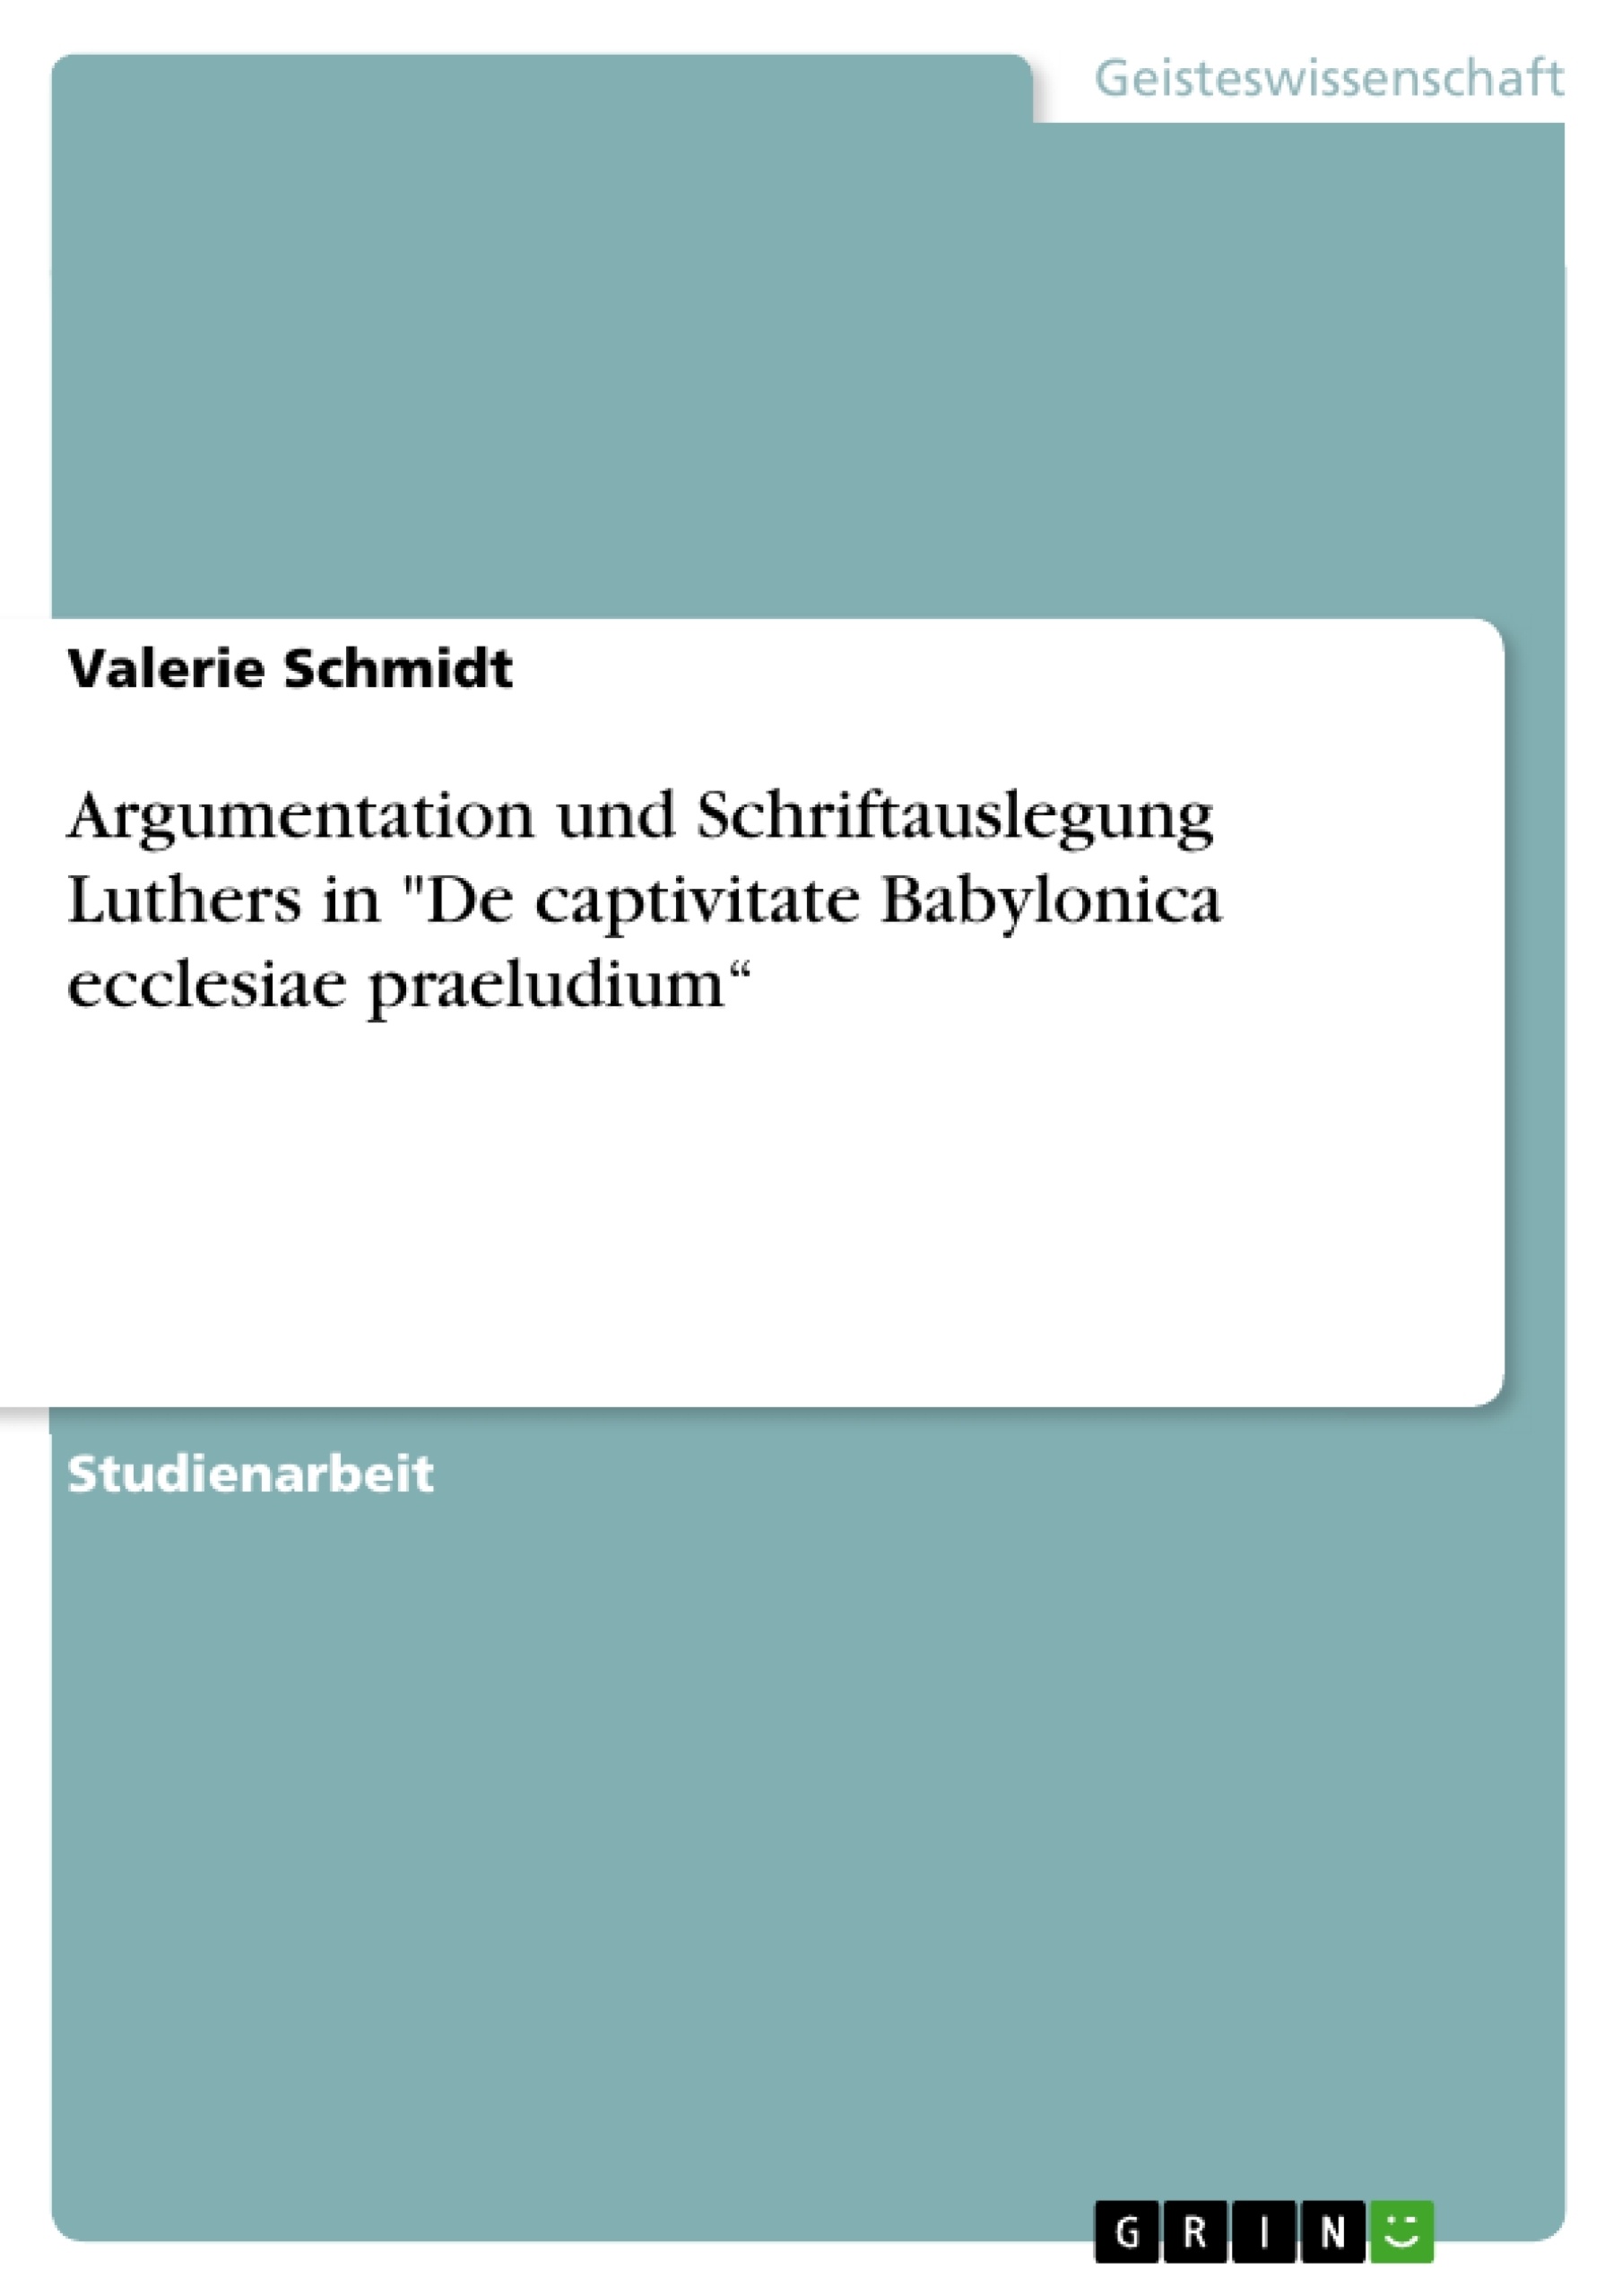 Titel: Argumentation und Schriftauslegung Luthers in "De captivitate Babylonica ecclesiae praeludium“